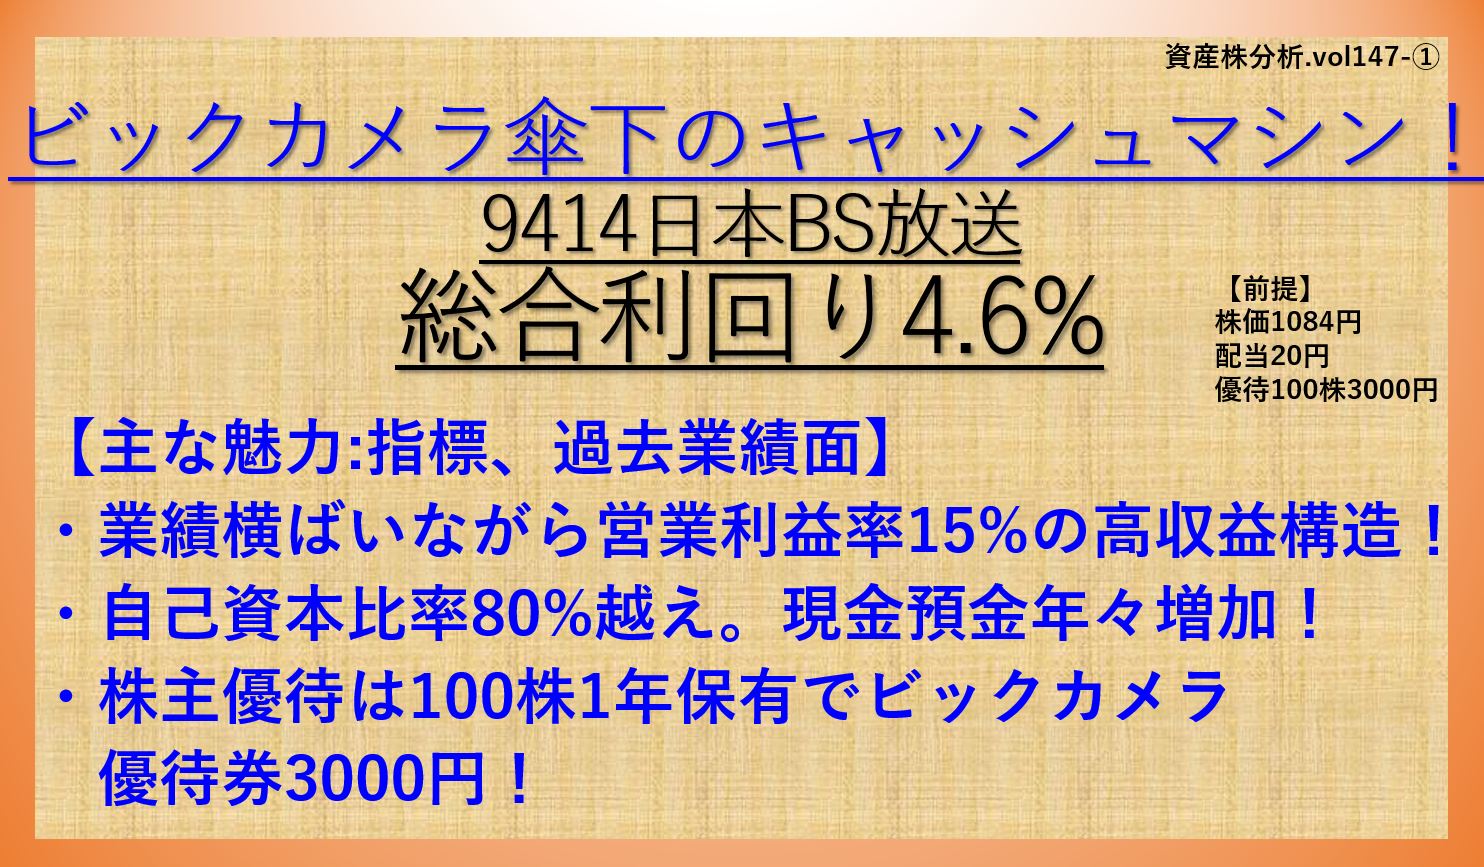 9414-日本BS放送-資産株①